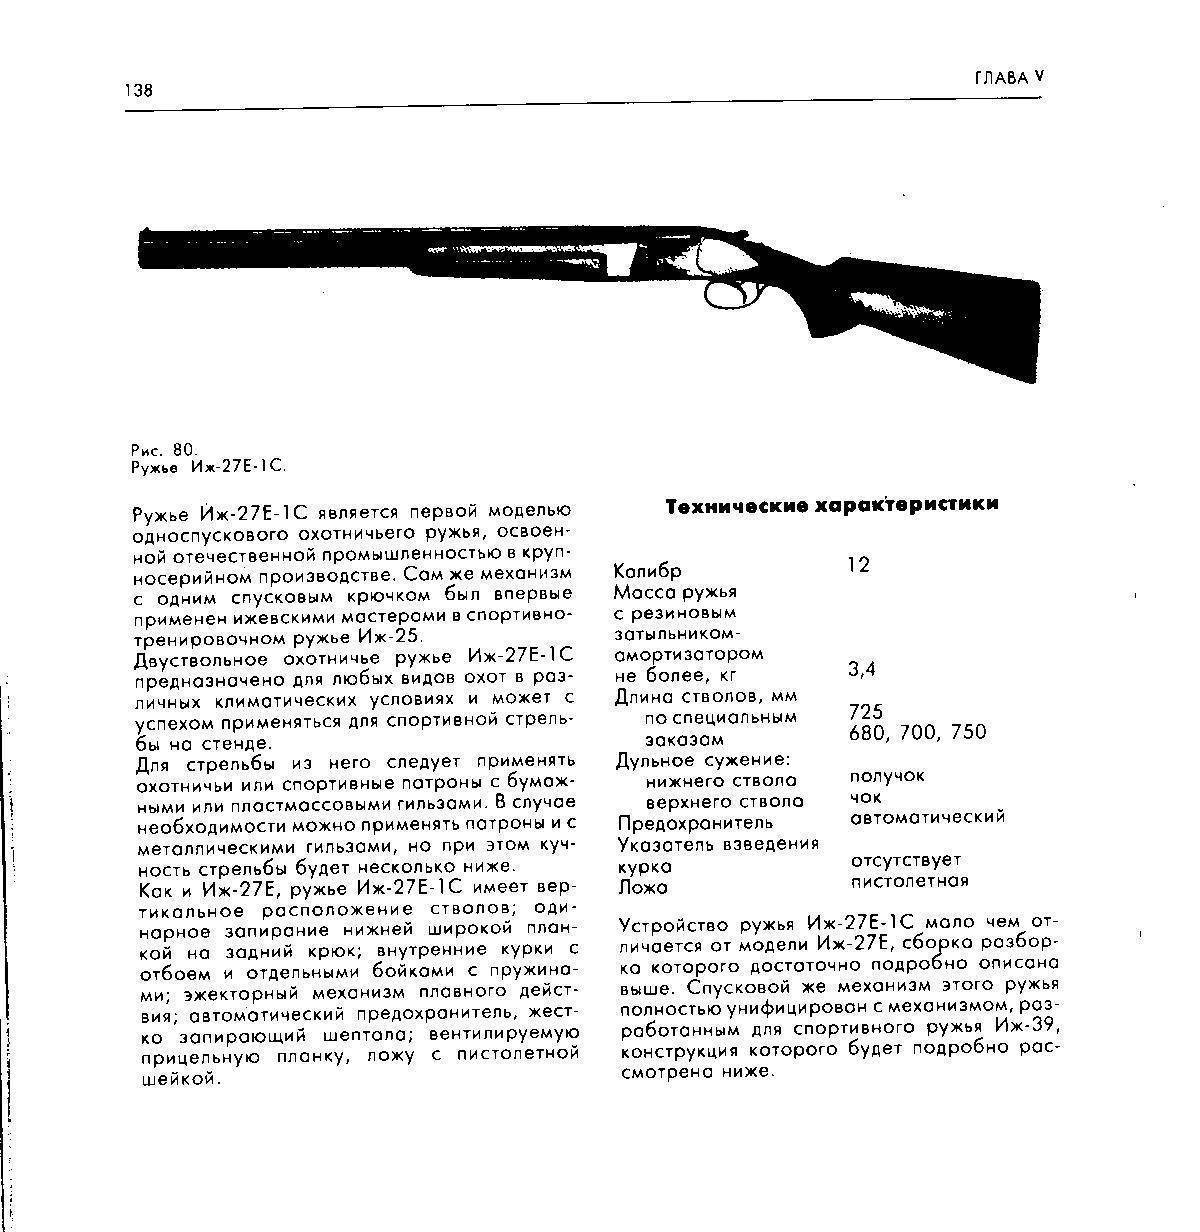 Иж-12 охотничье ружье, описание и технические характеристики ттх гладкоствольного оружия, длина ствола, вес, история и годы выпуска